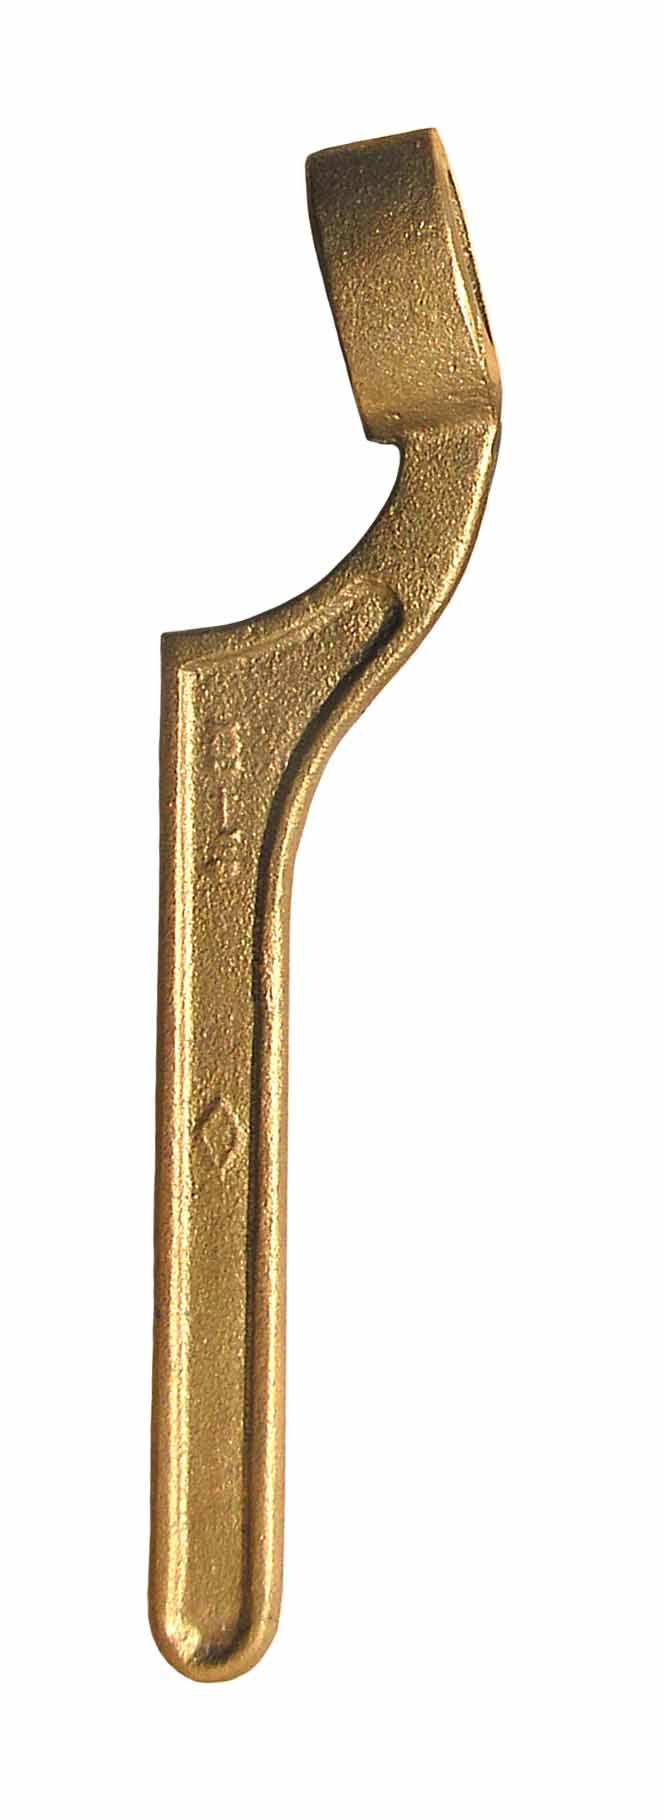 ประแจขันข้อต่อท่อดูดทองเหลืองรูปตัว V (Handle Suction Spanner Wrench)